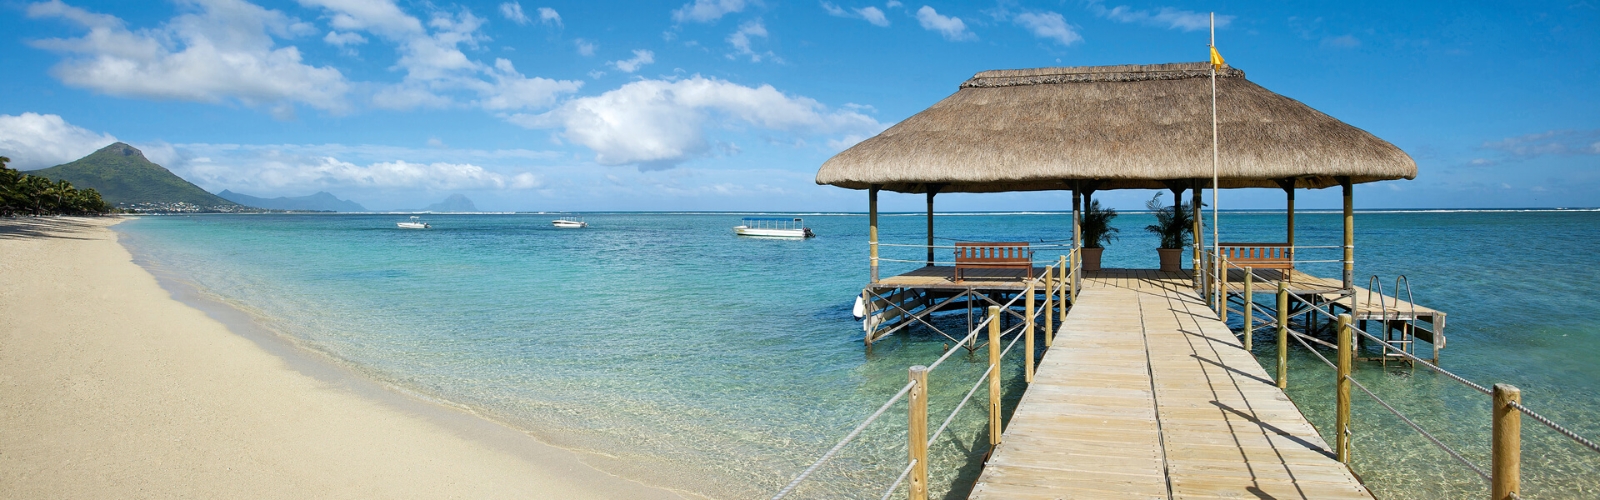 Mauritius - Tourist Destinations